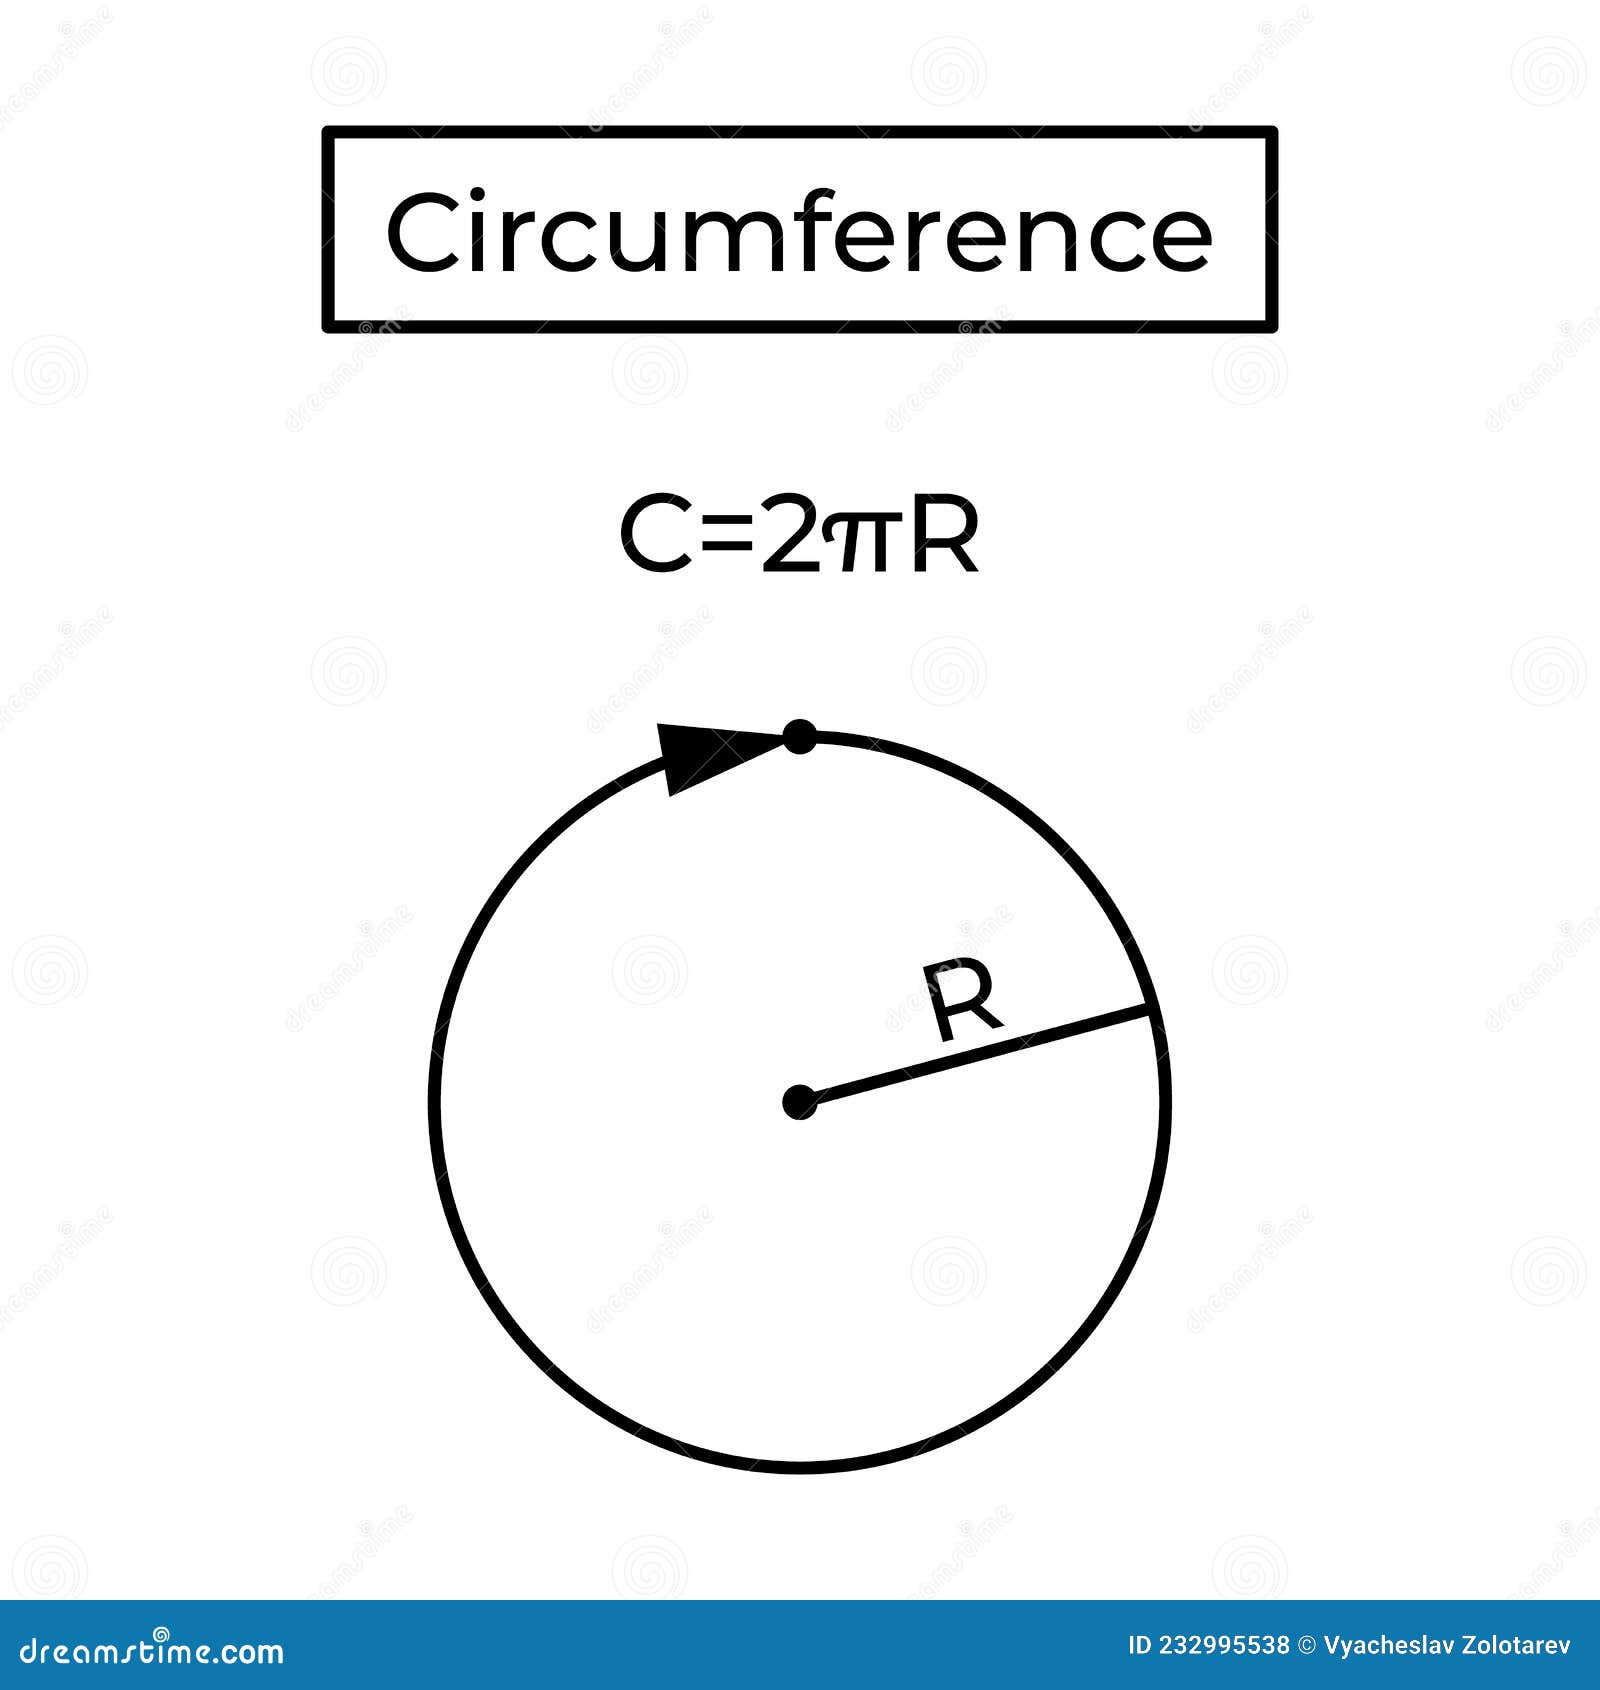 circumference and formula.